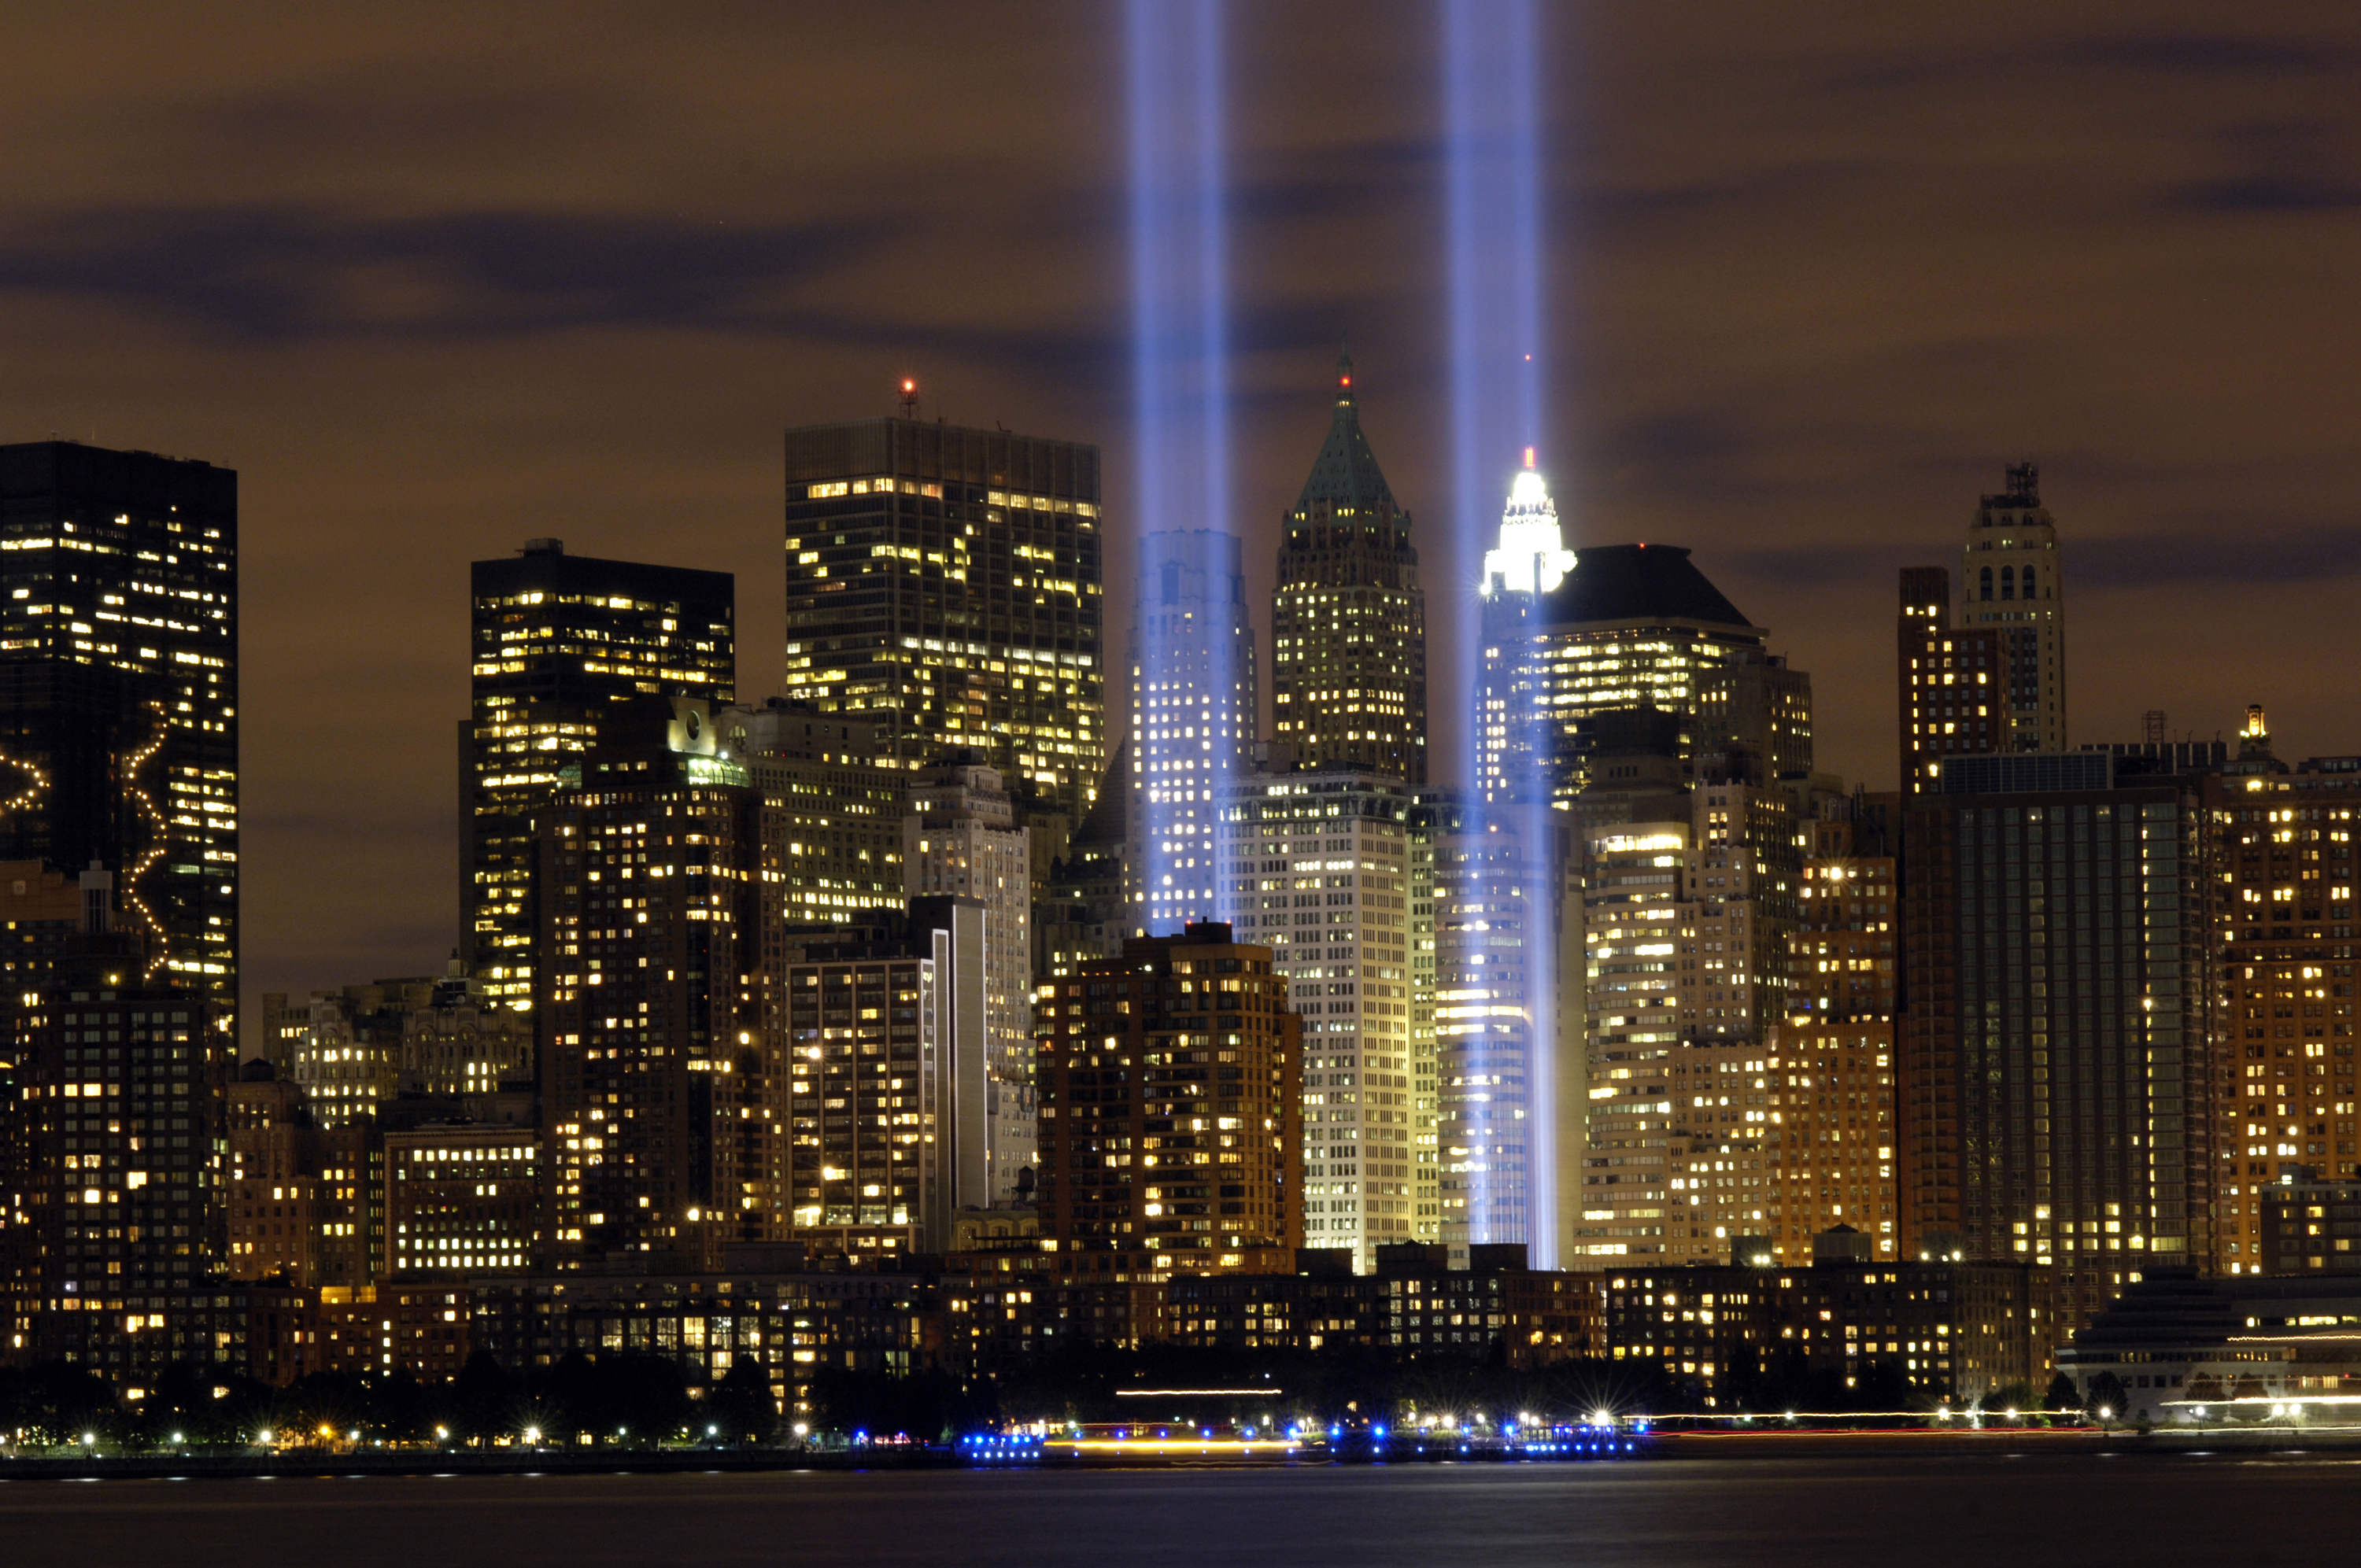 Модель 9 11. Башни-Близнецы Нью-Йорк. Башни ВТЦ В Нью-Йорке. Манхэттен башни Близнецы. Ночной New York башня Близнецы.